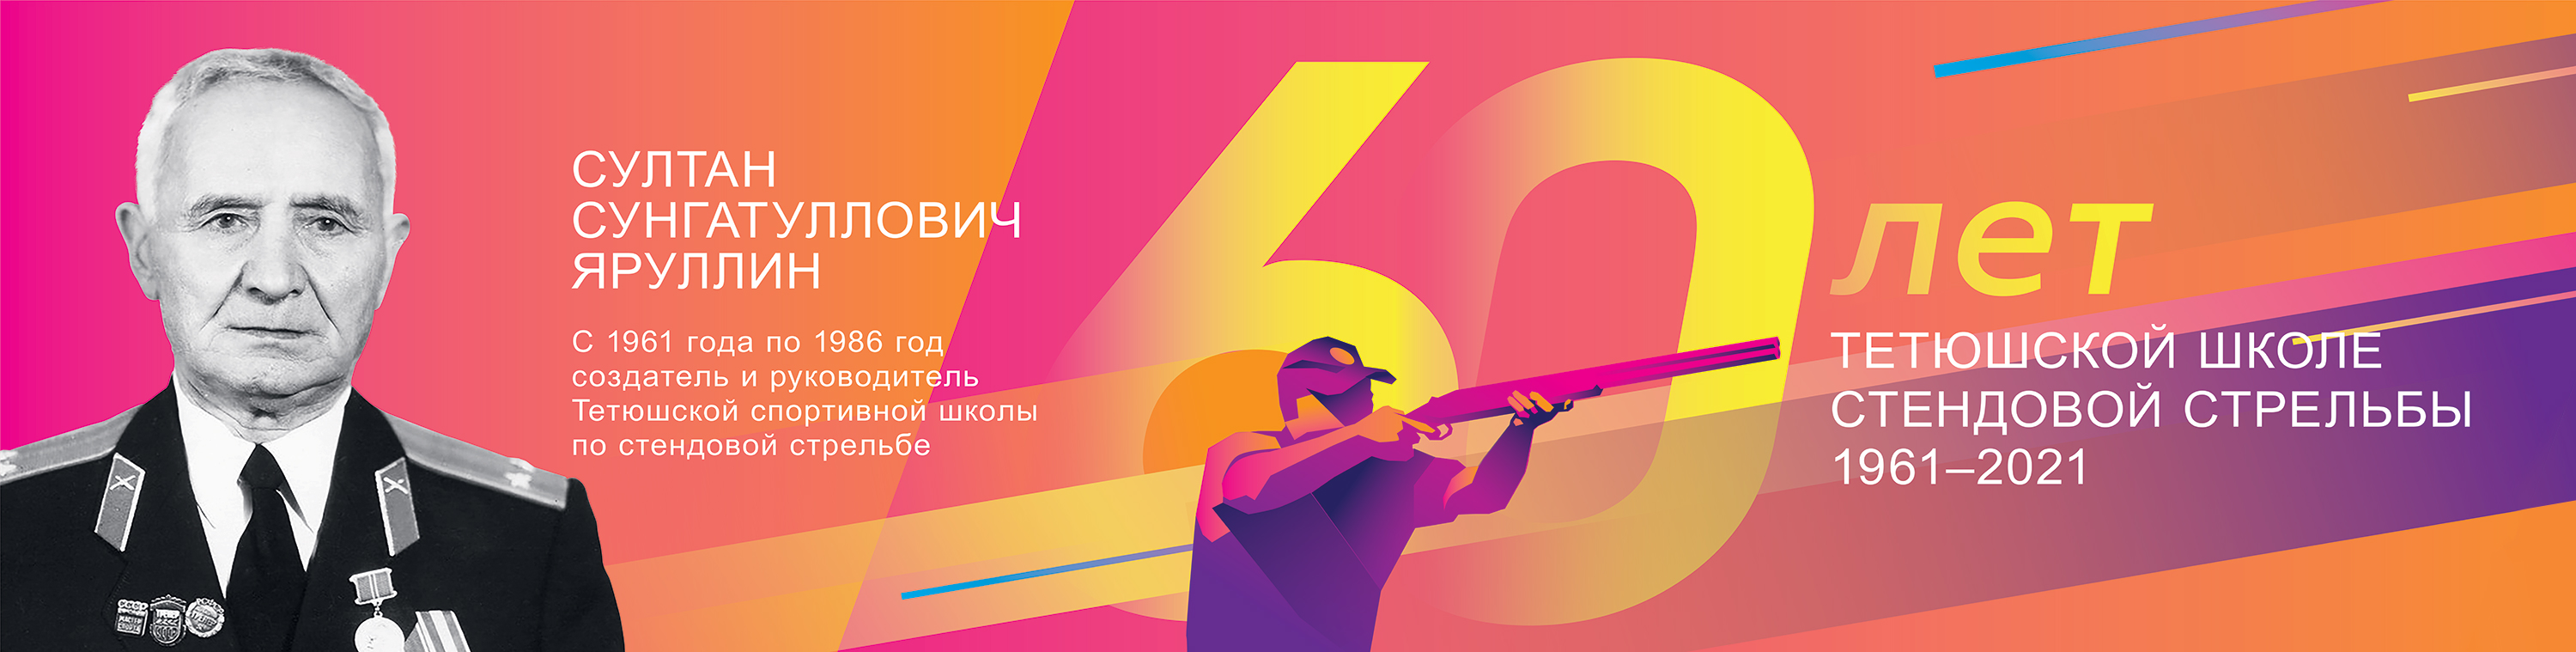 фото: Пресс-релиз: 20 июня в Татарстане состоится празднование 60-ти летнего юбилея школы стендовой стрельбы 